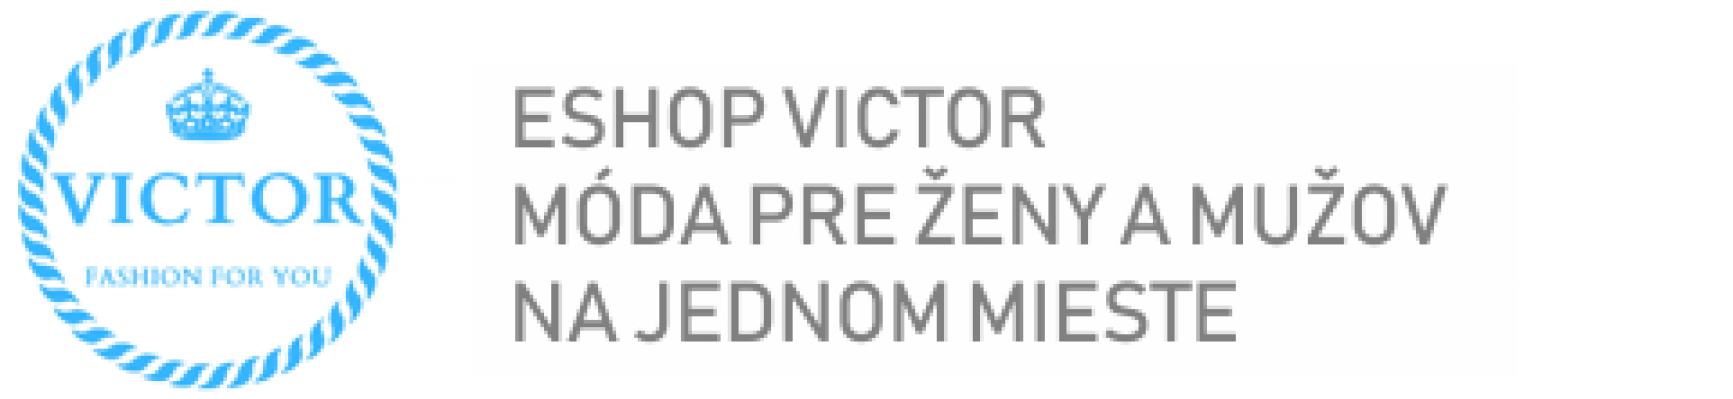 logo_objednavka_2020_2